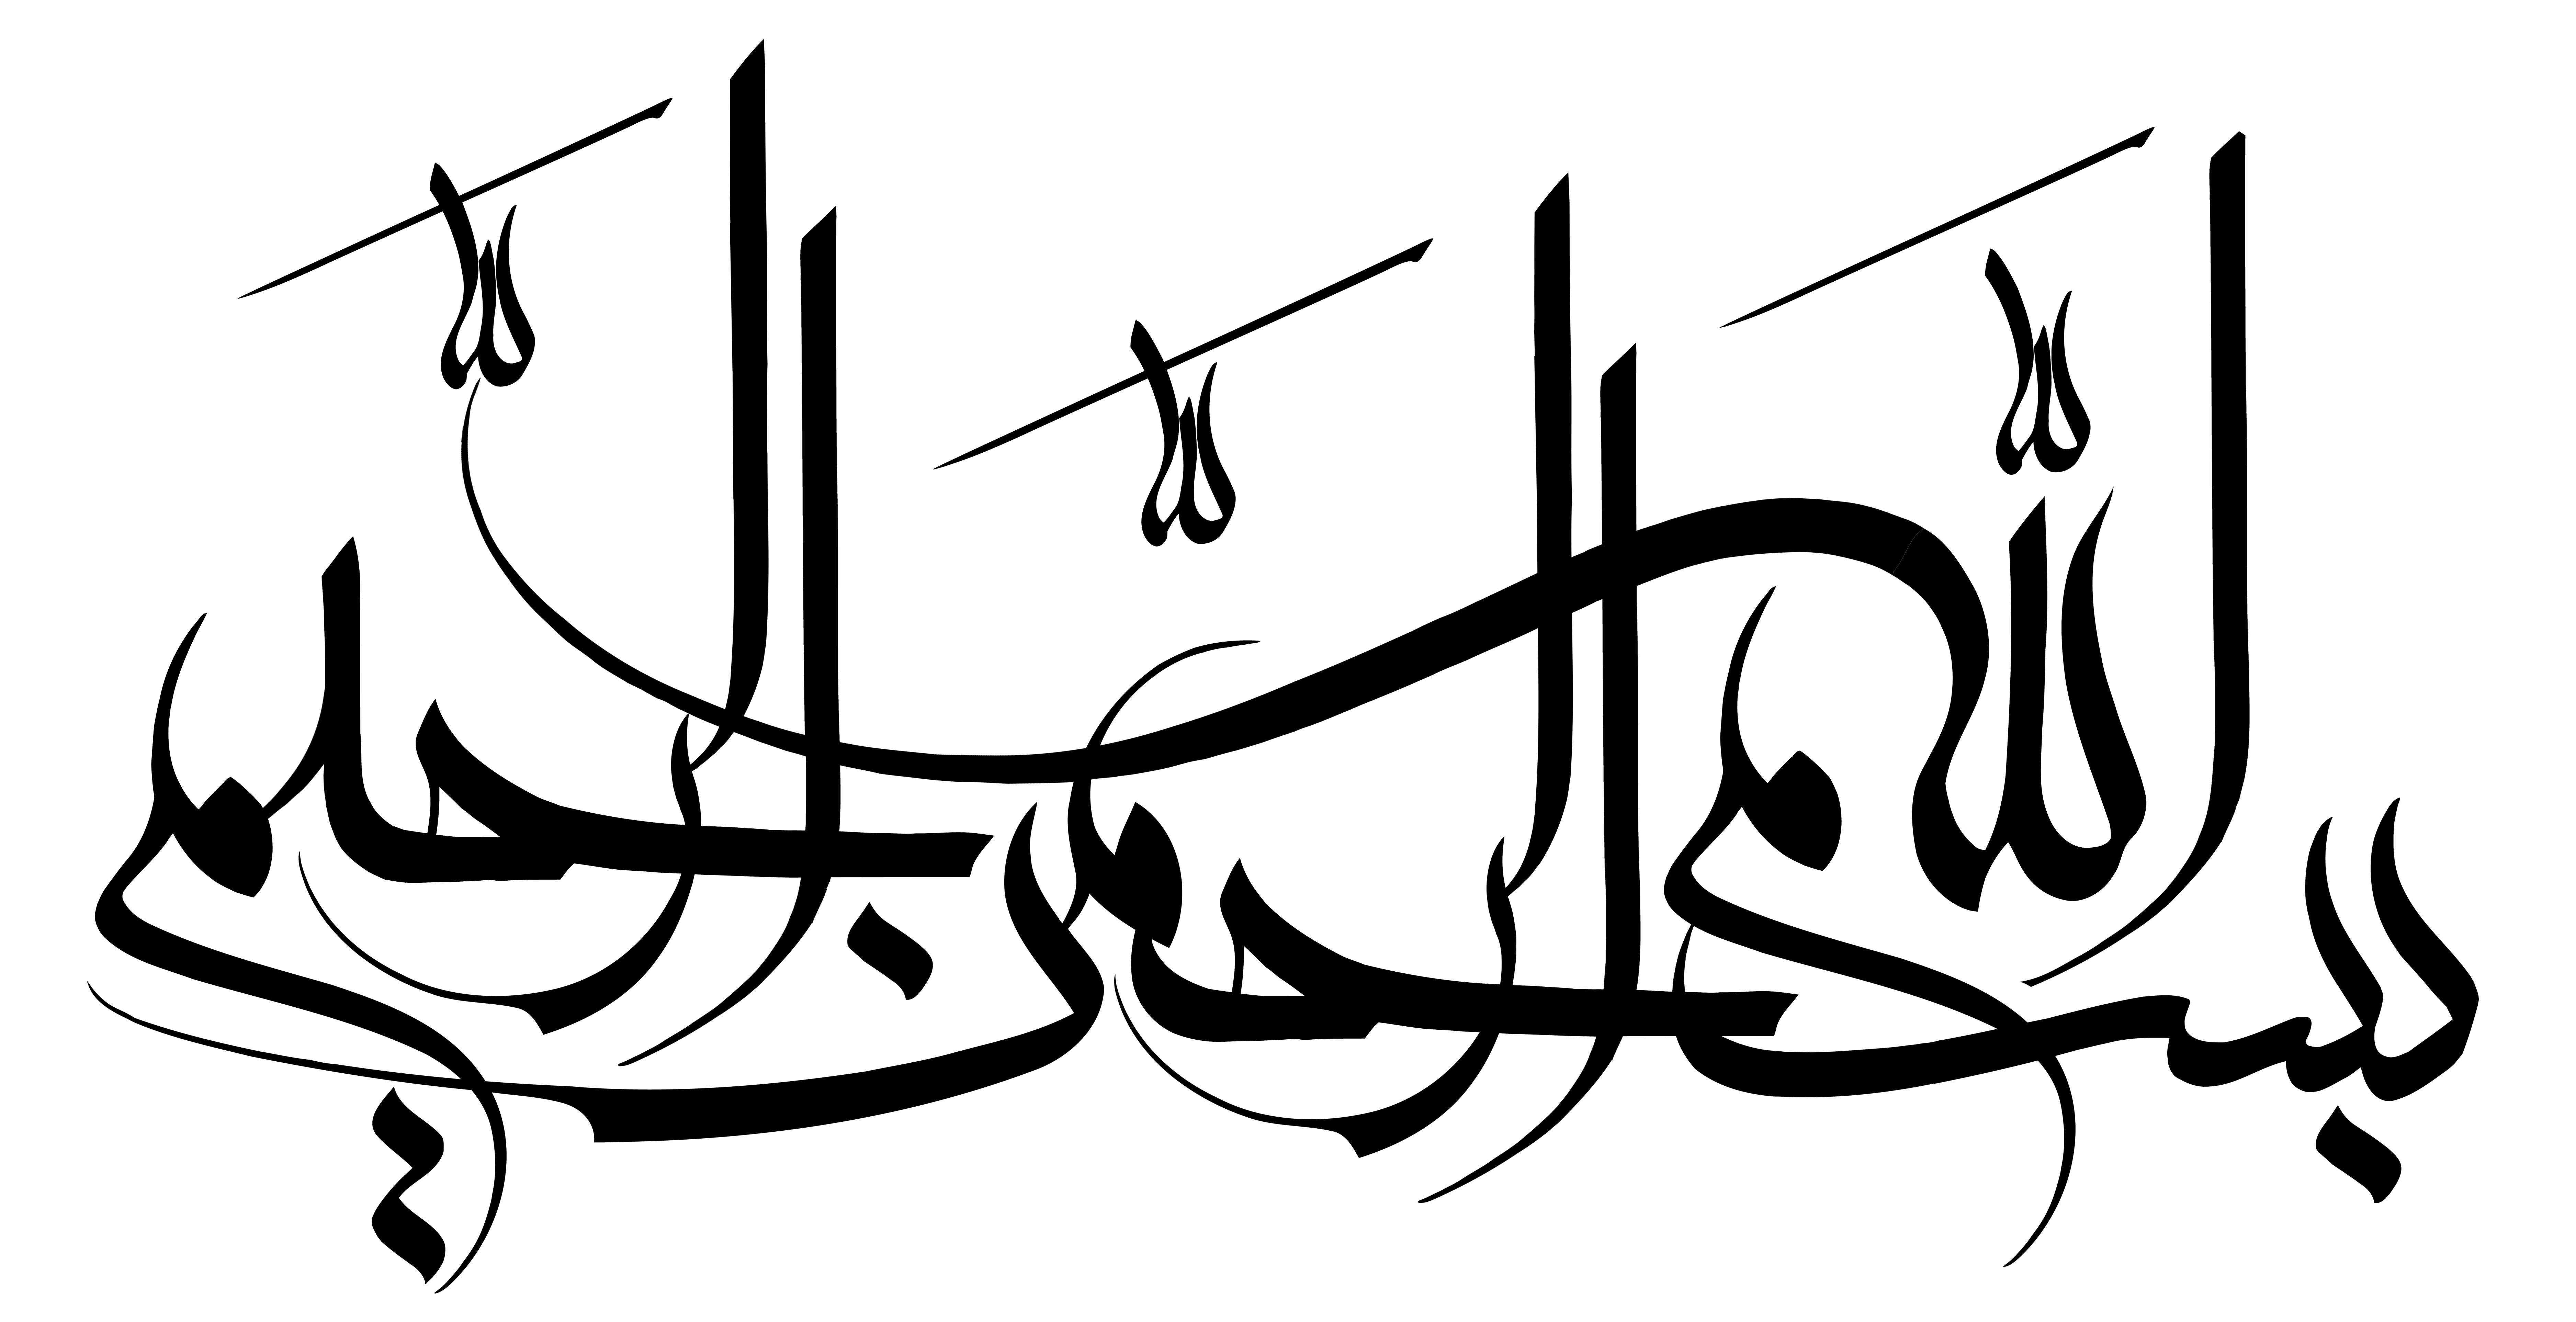 خوشنویسی رسم الخط بسم الله الرحمن الرحيم